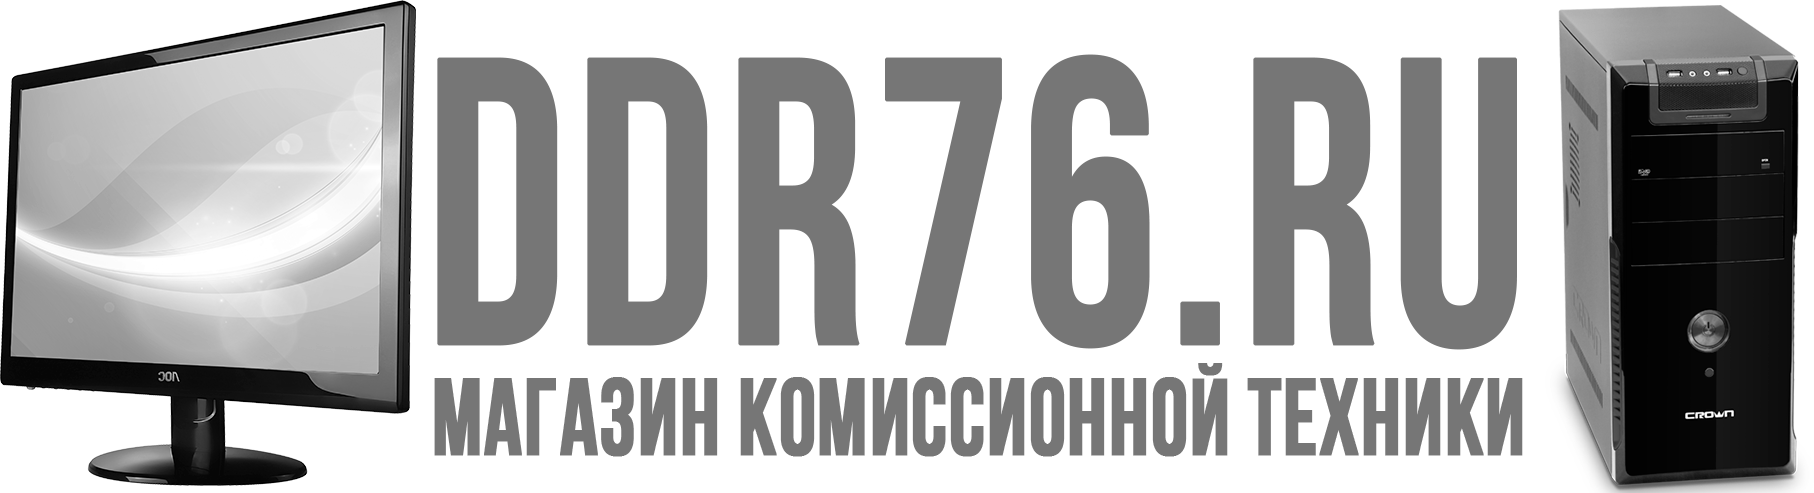 Логотип сервисного центра Ddr76.ru